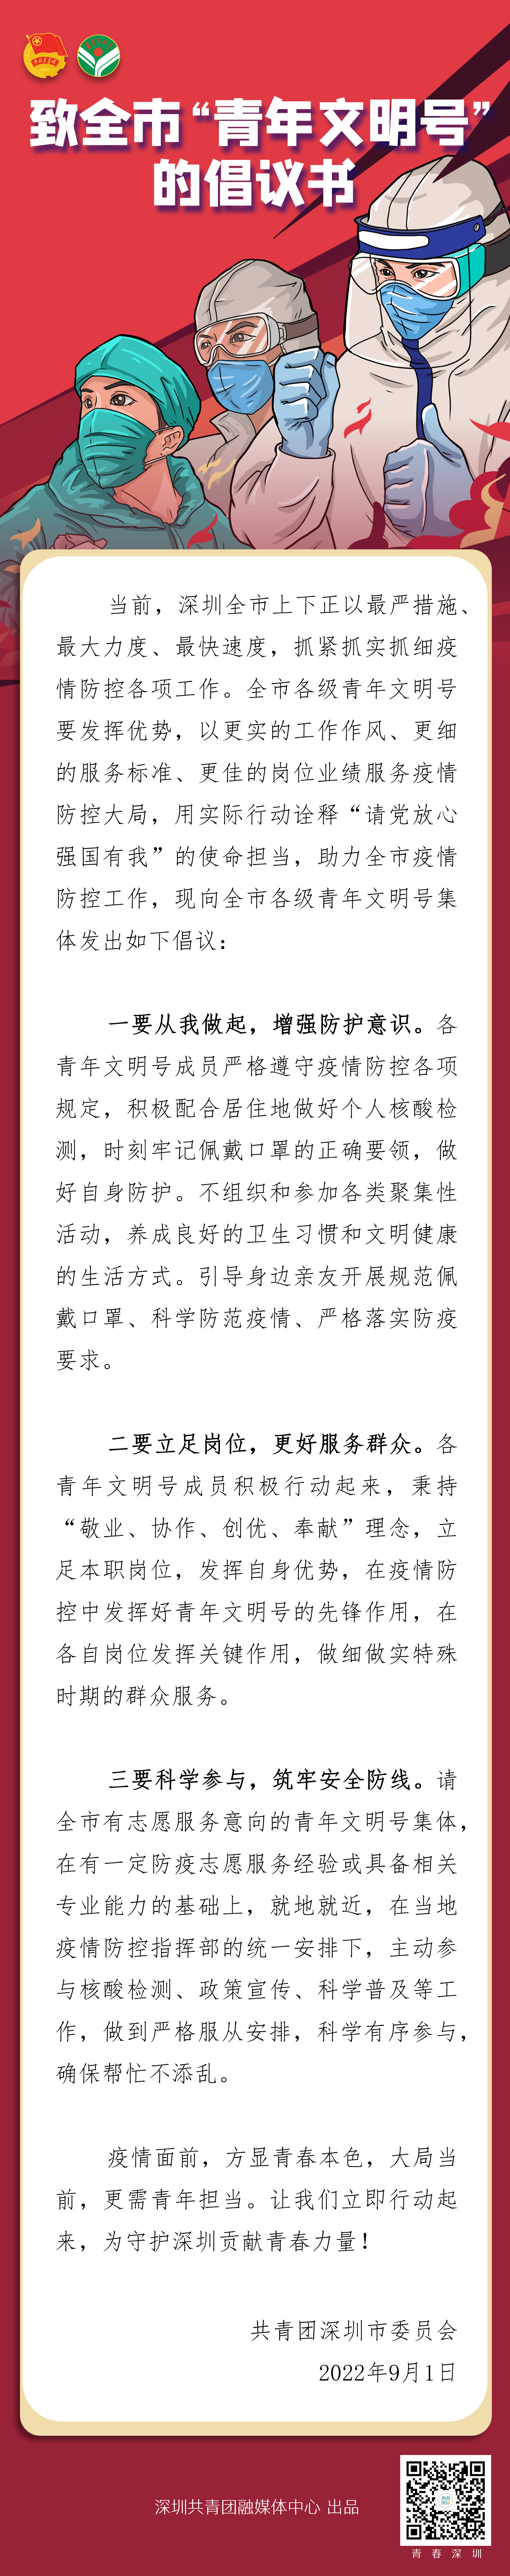 深圳共青团连发两条倡议书 号召青年文明号、青年突击队同心战疫